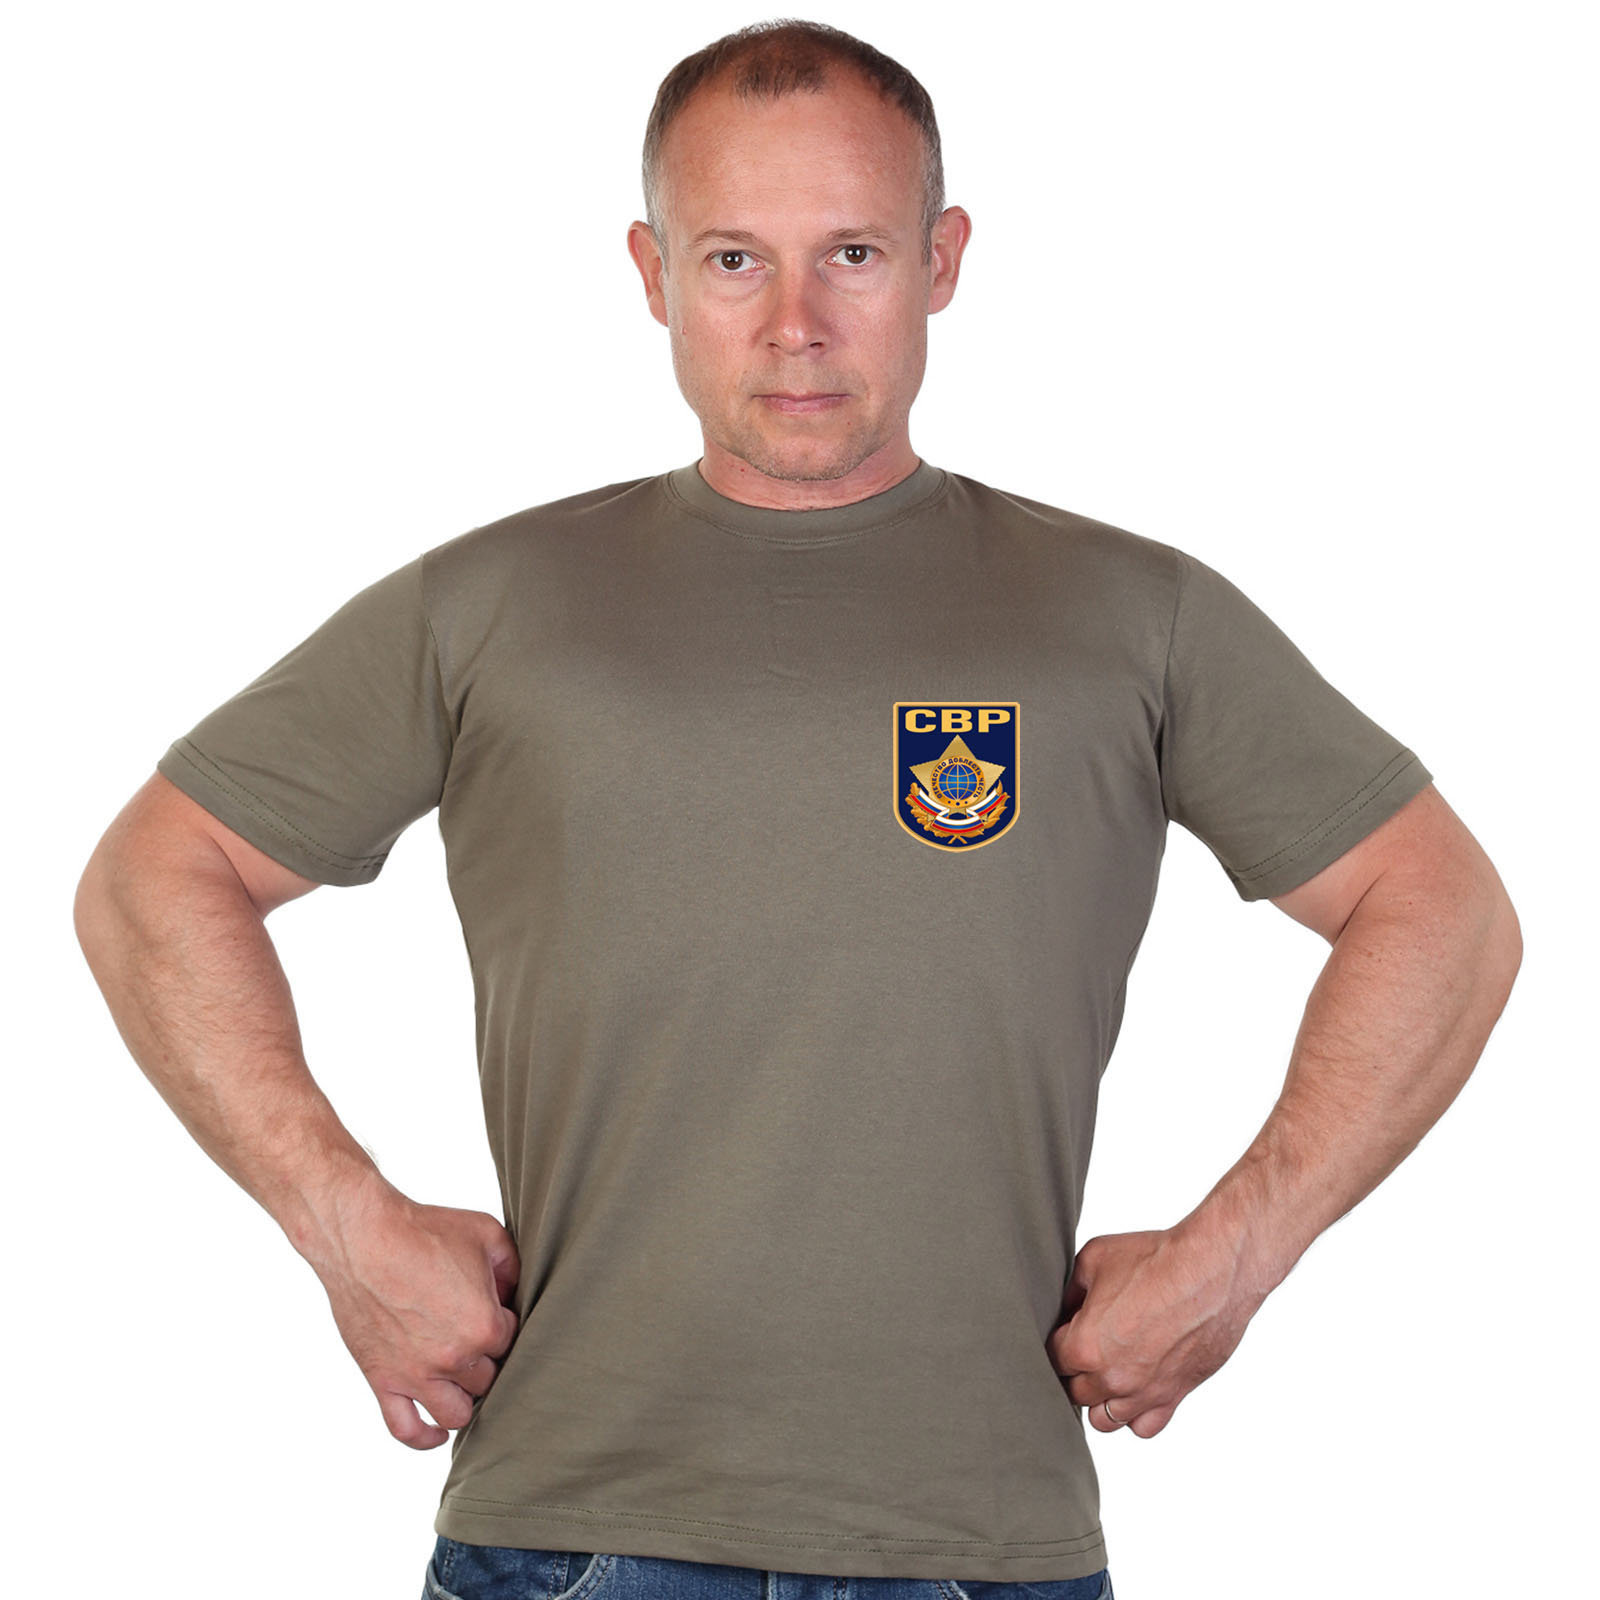 Оливковая футболка с термотрансфером "СВР" 